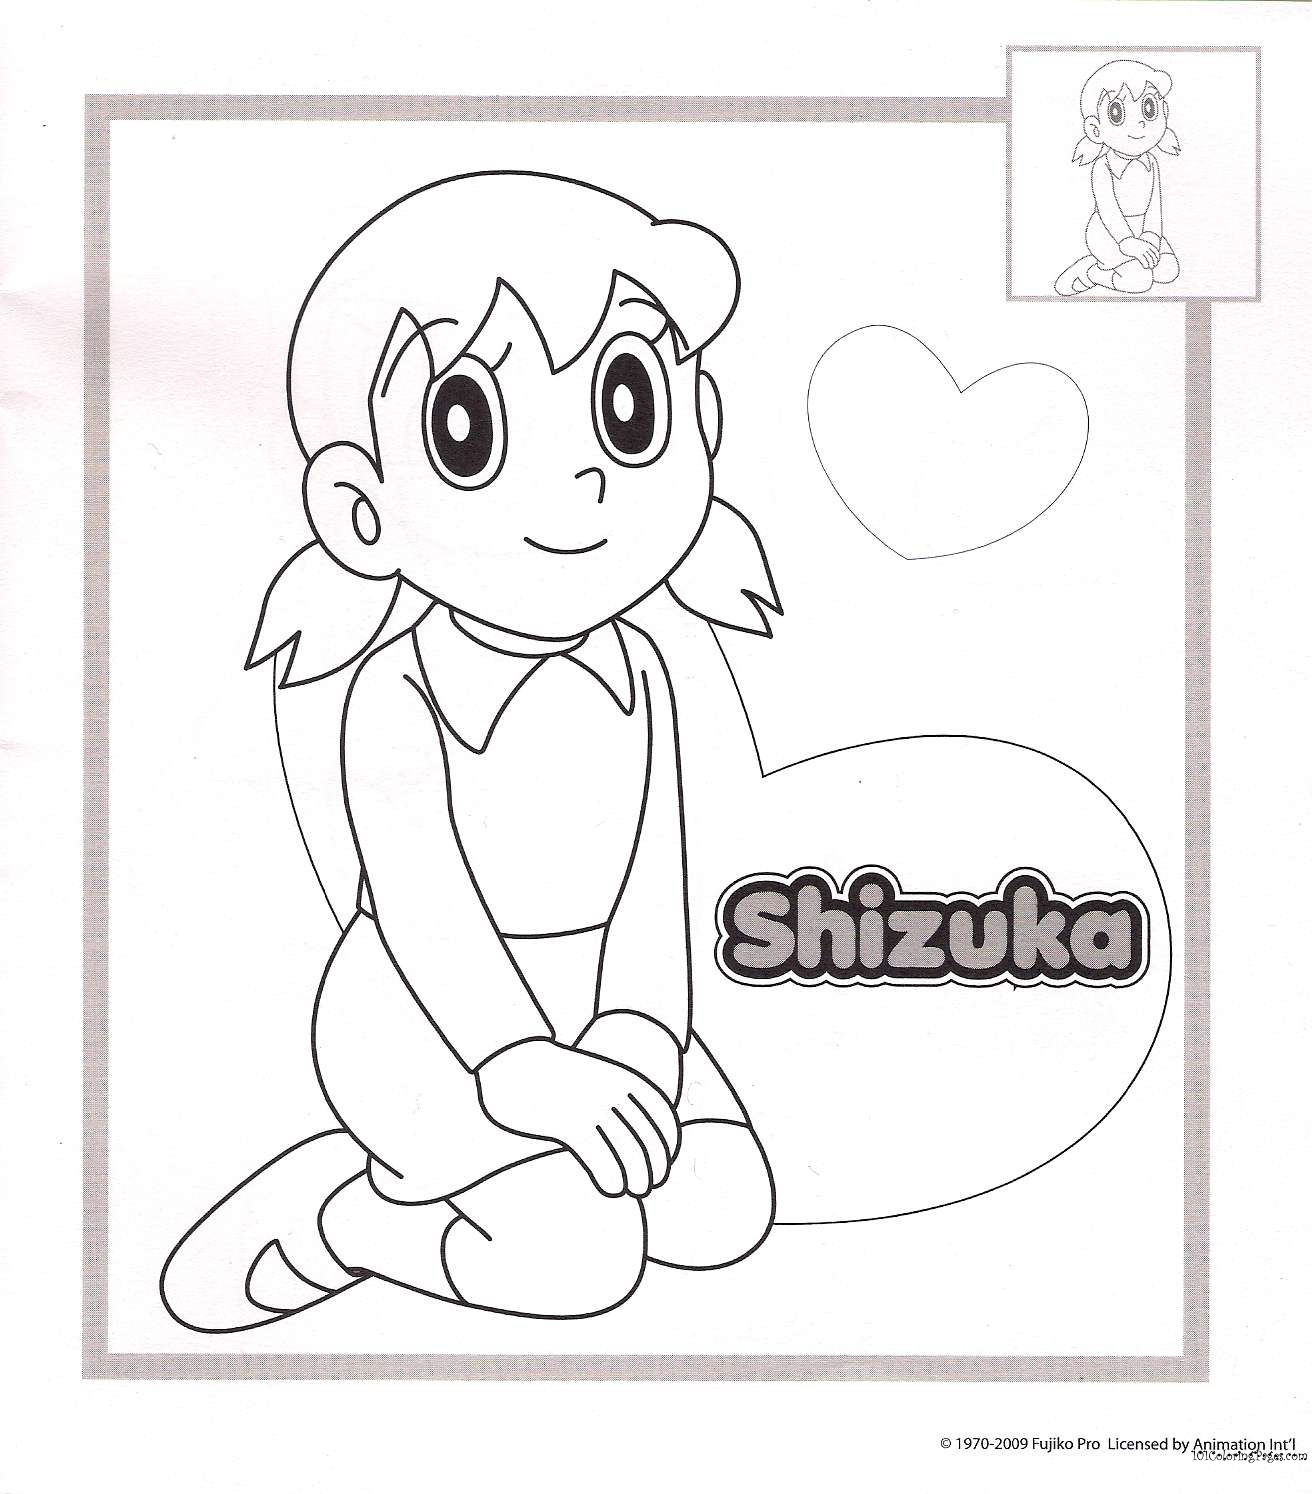 shizuka with nobita